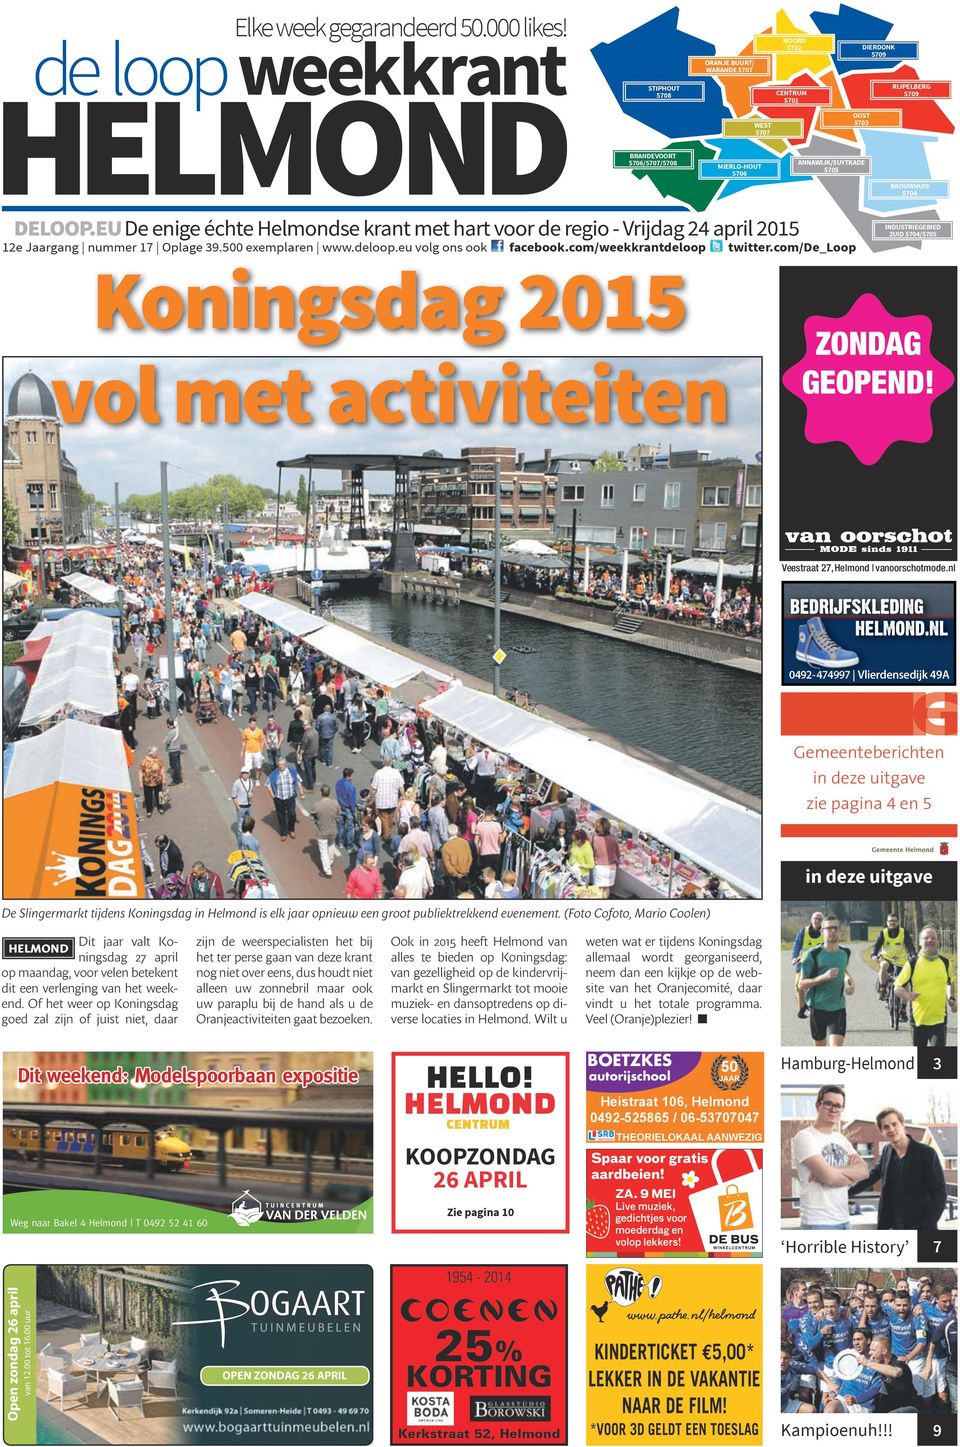 eu De enige échte Helmondse krant met hart voor de regio - Vrijdag 24 april 2015 12e Jaargang nummer 17 Oplage 39.500 exemplaren www.deloop.